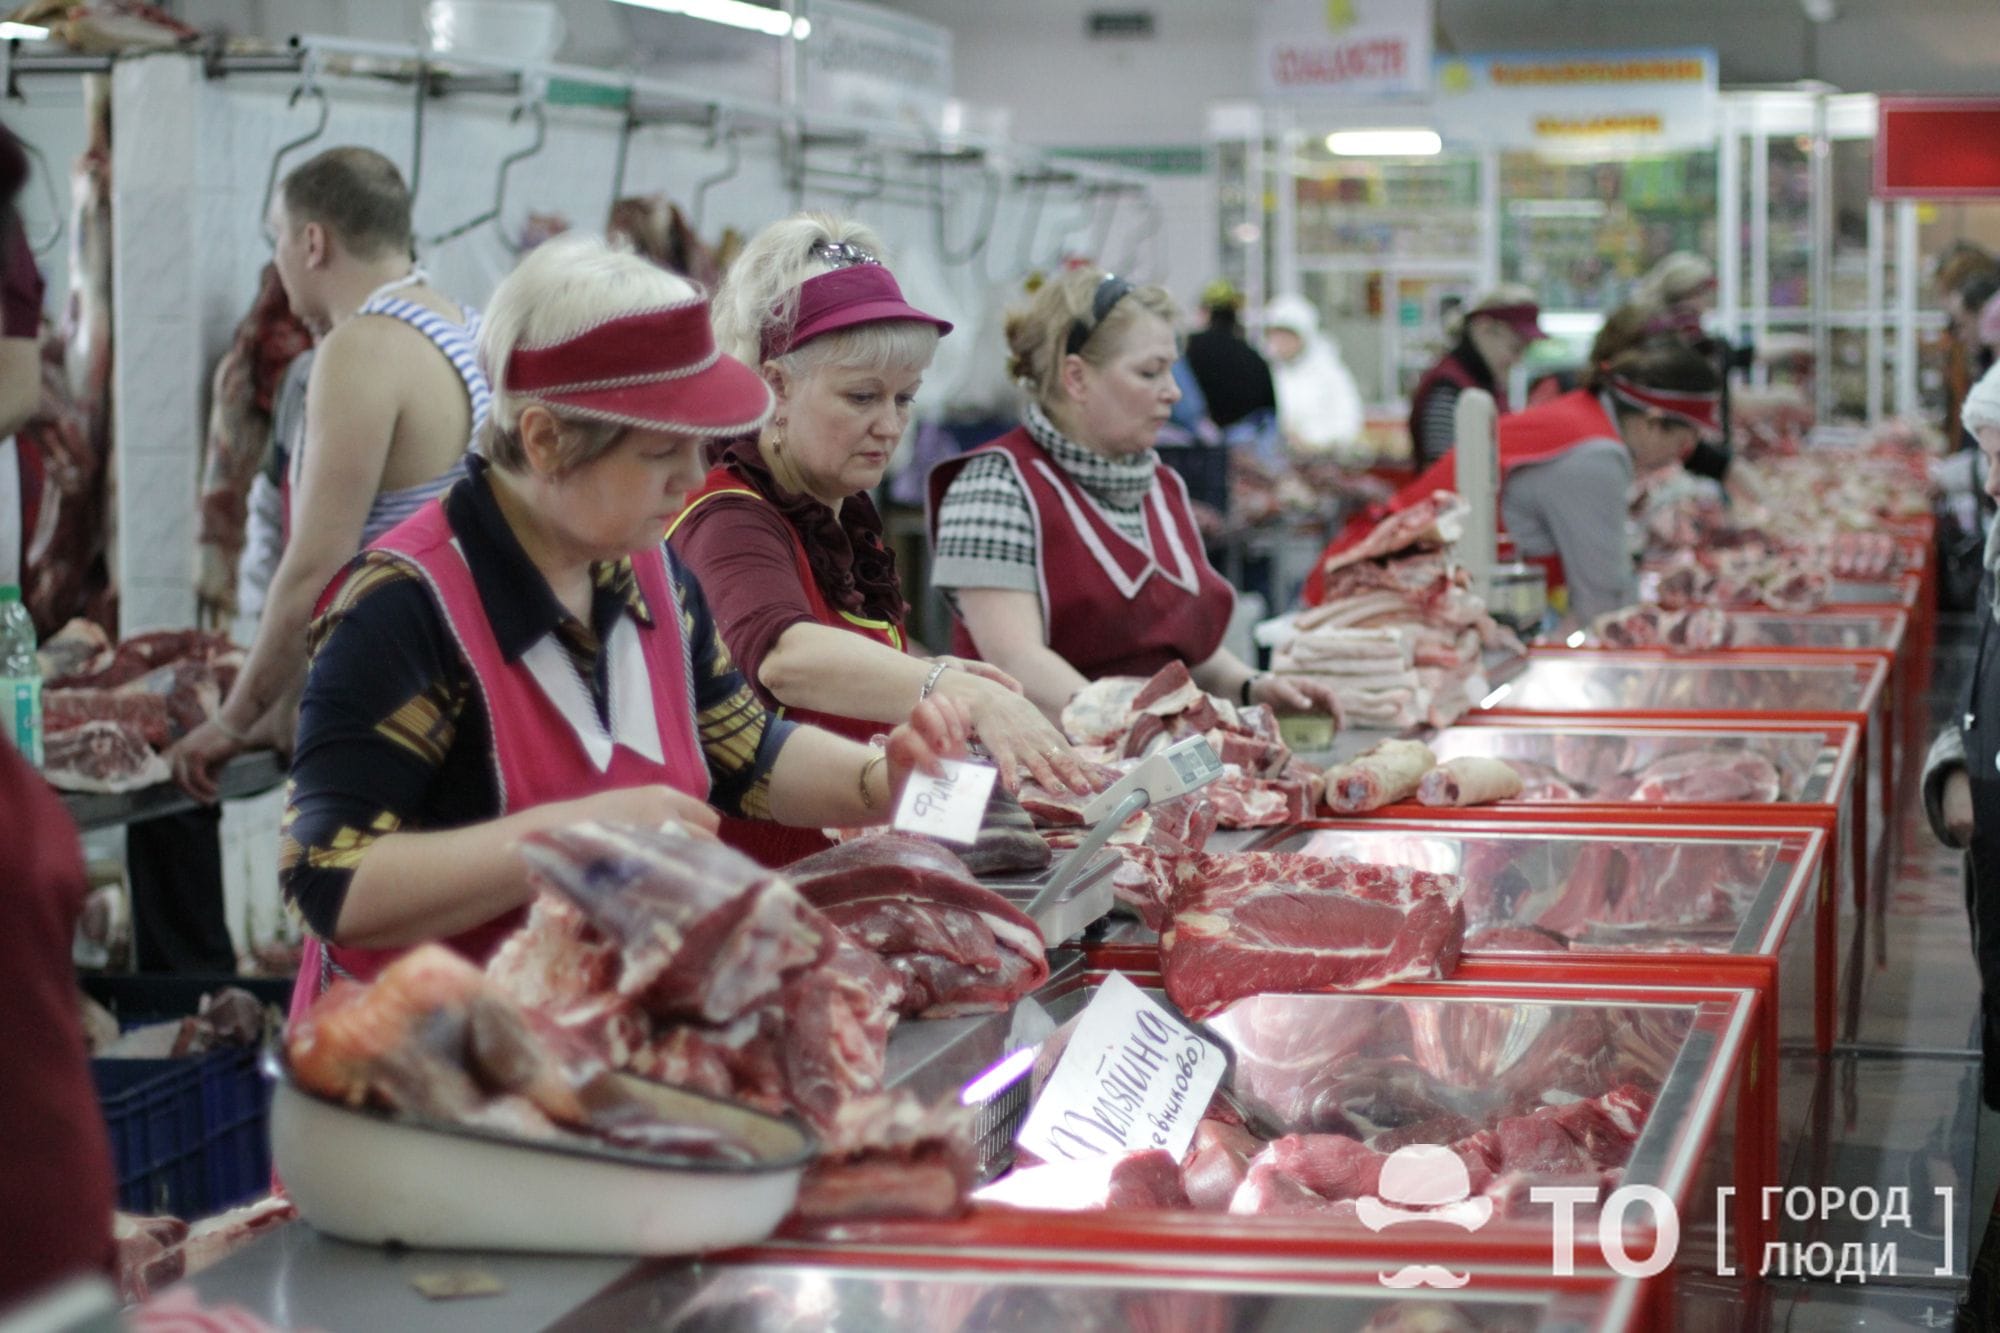 Еда, Социальная сфера, Томские новости, Экономика и финансы, мясо говядина купить мясо в Томске свежее мясо хорошее мясо цены на мясо В Томске все еще самые высокие цены на говядину в СФО — Томскстат